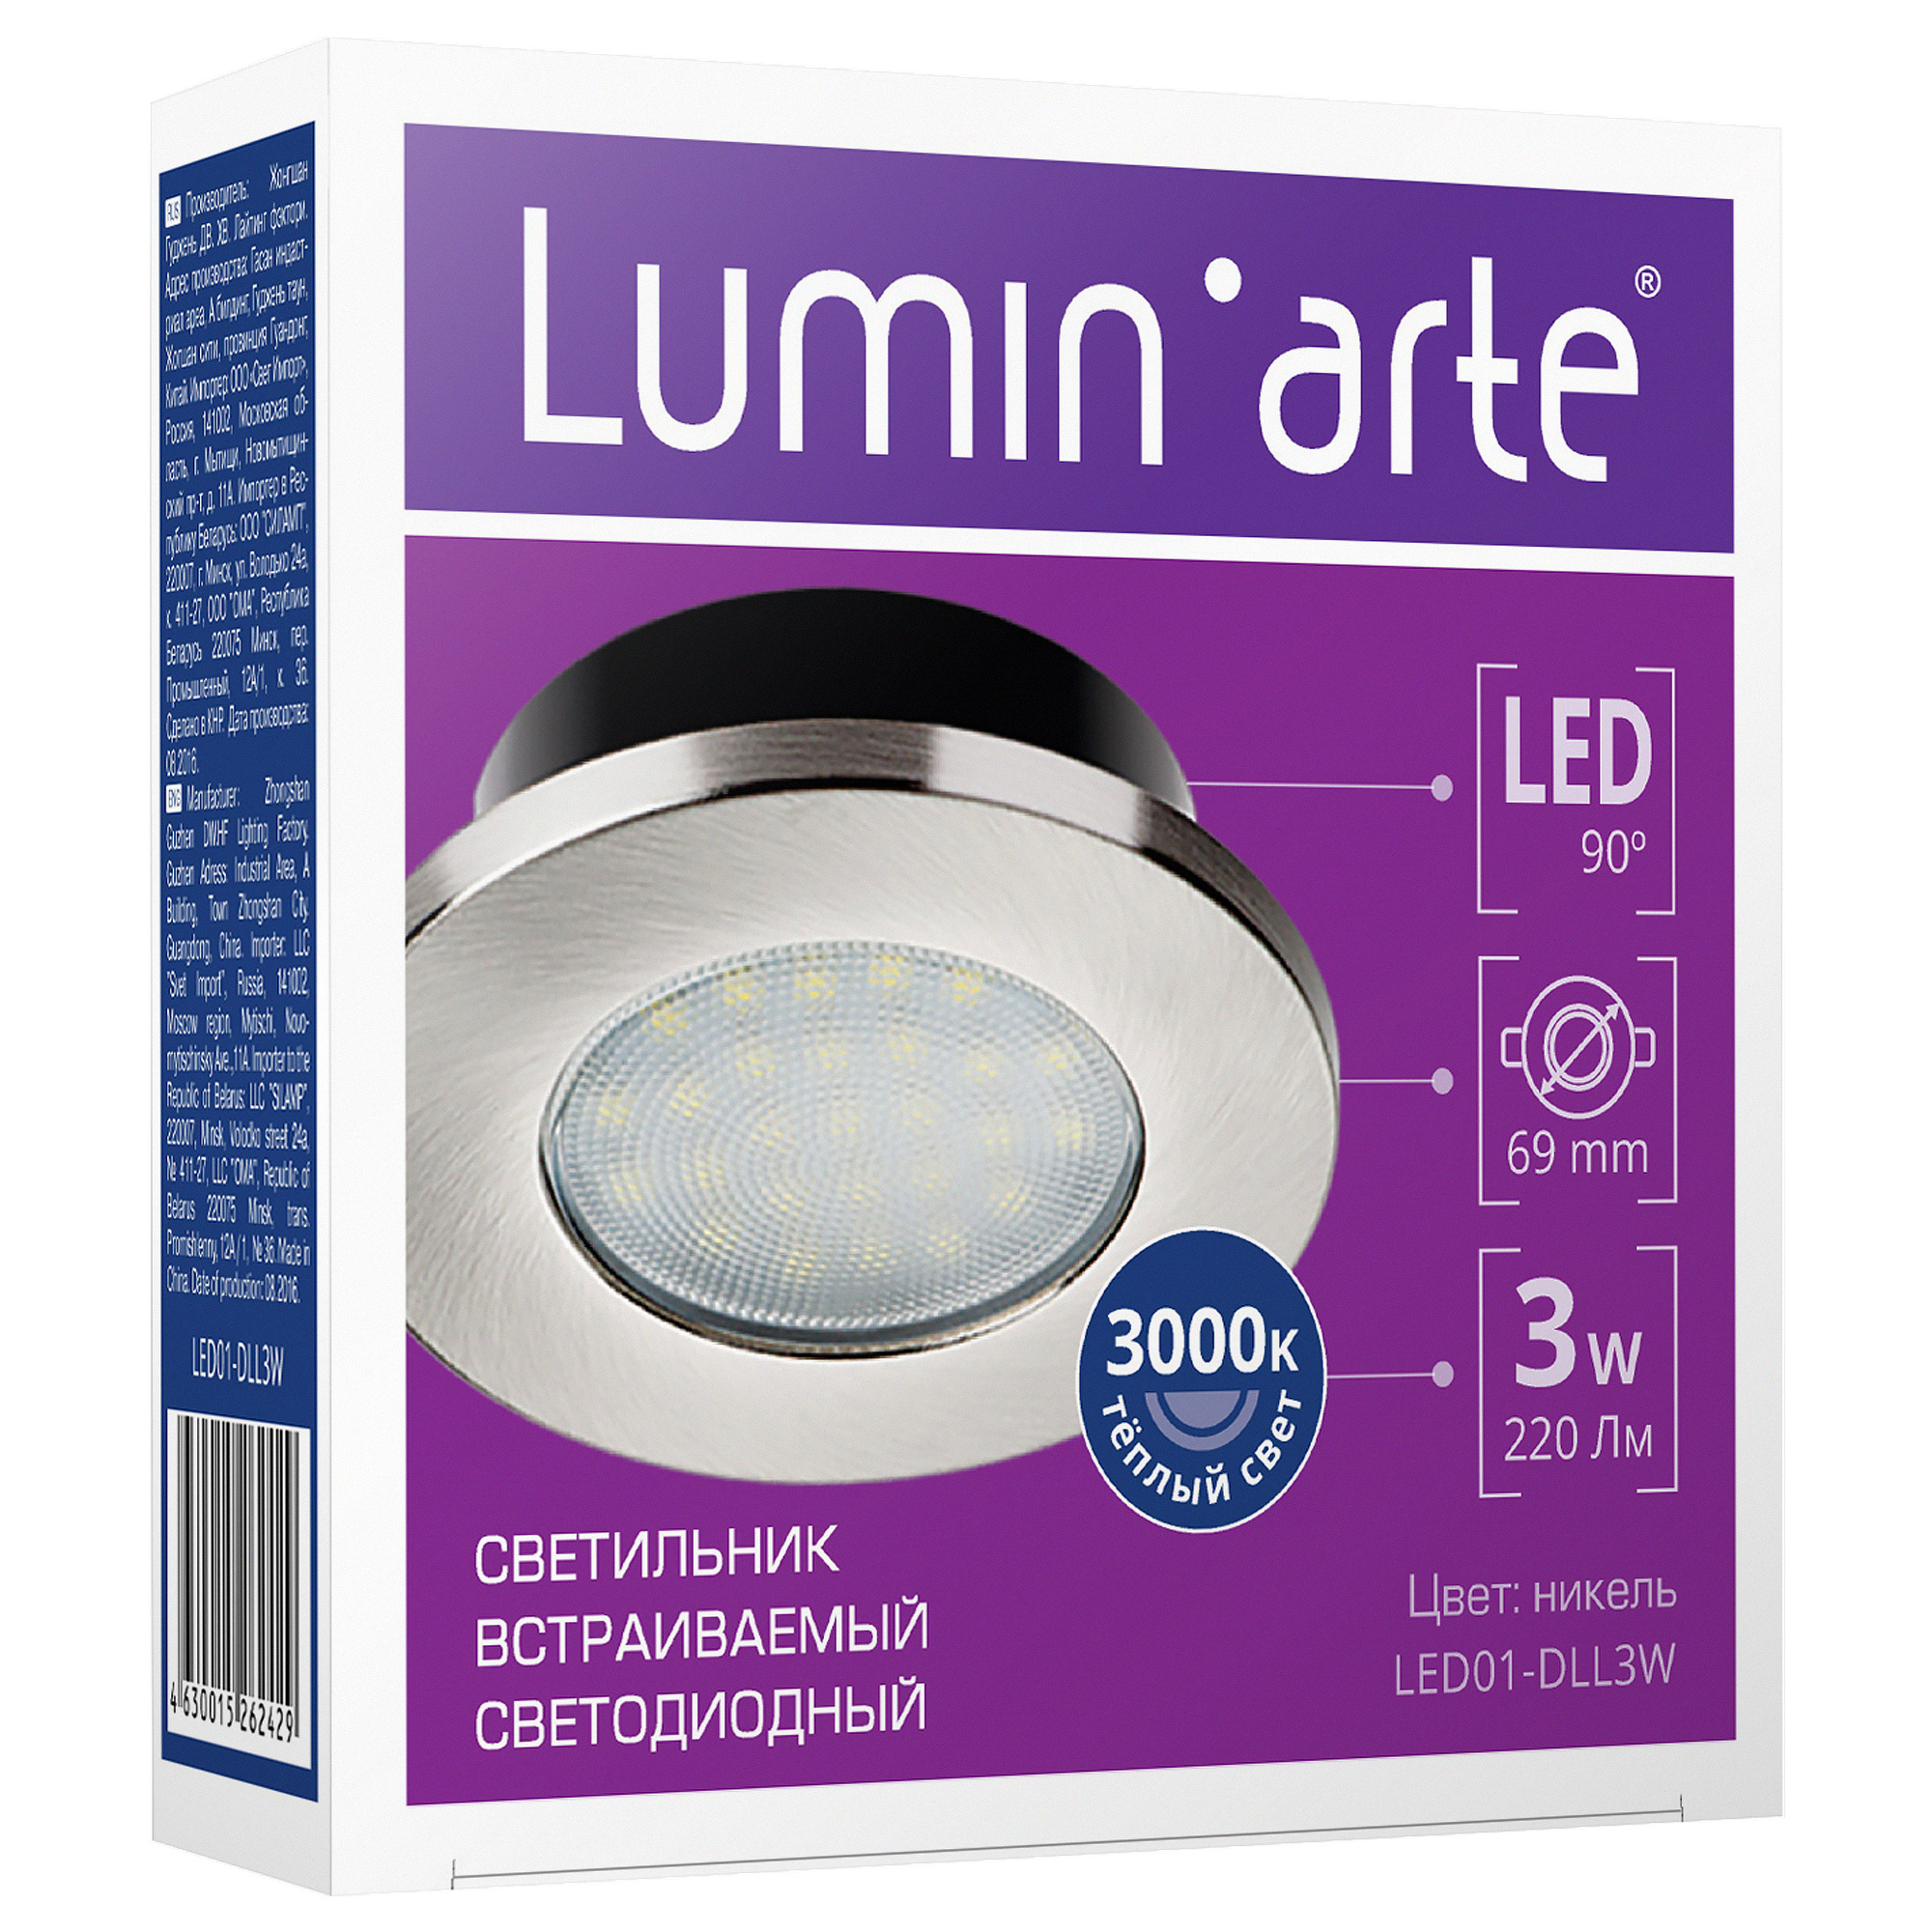 Lumen arte. Встраиваемый светильник Lumin'Arte светодиодный. Точечный светильник Lumin'Arte led01-dll4w. Встраиваемый светодиодный светильник LUMINARTE led01-dll3w. Lumen Arte led01-dll3w светильник точечный.